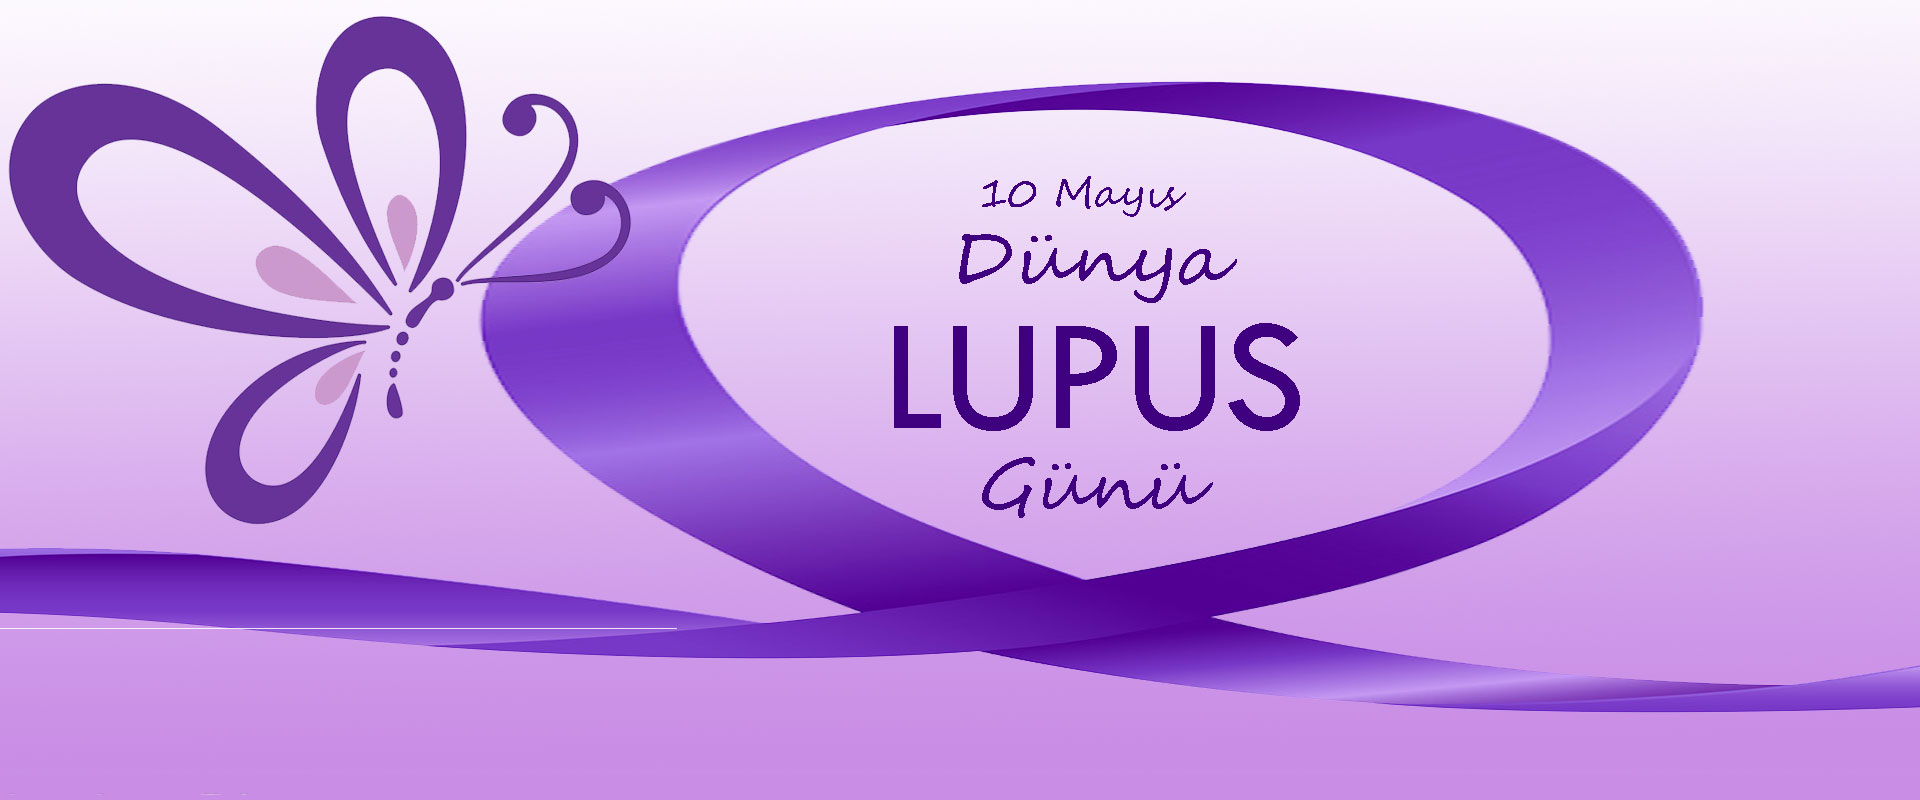 Lupus Hastalığını Biliyor musunuz? 10 Mayıs Dünya Lupus Günü 